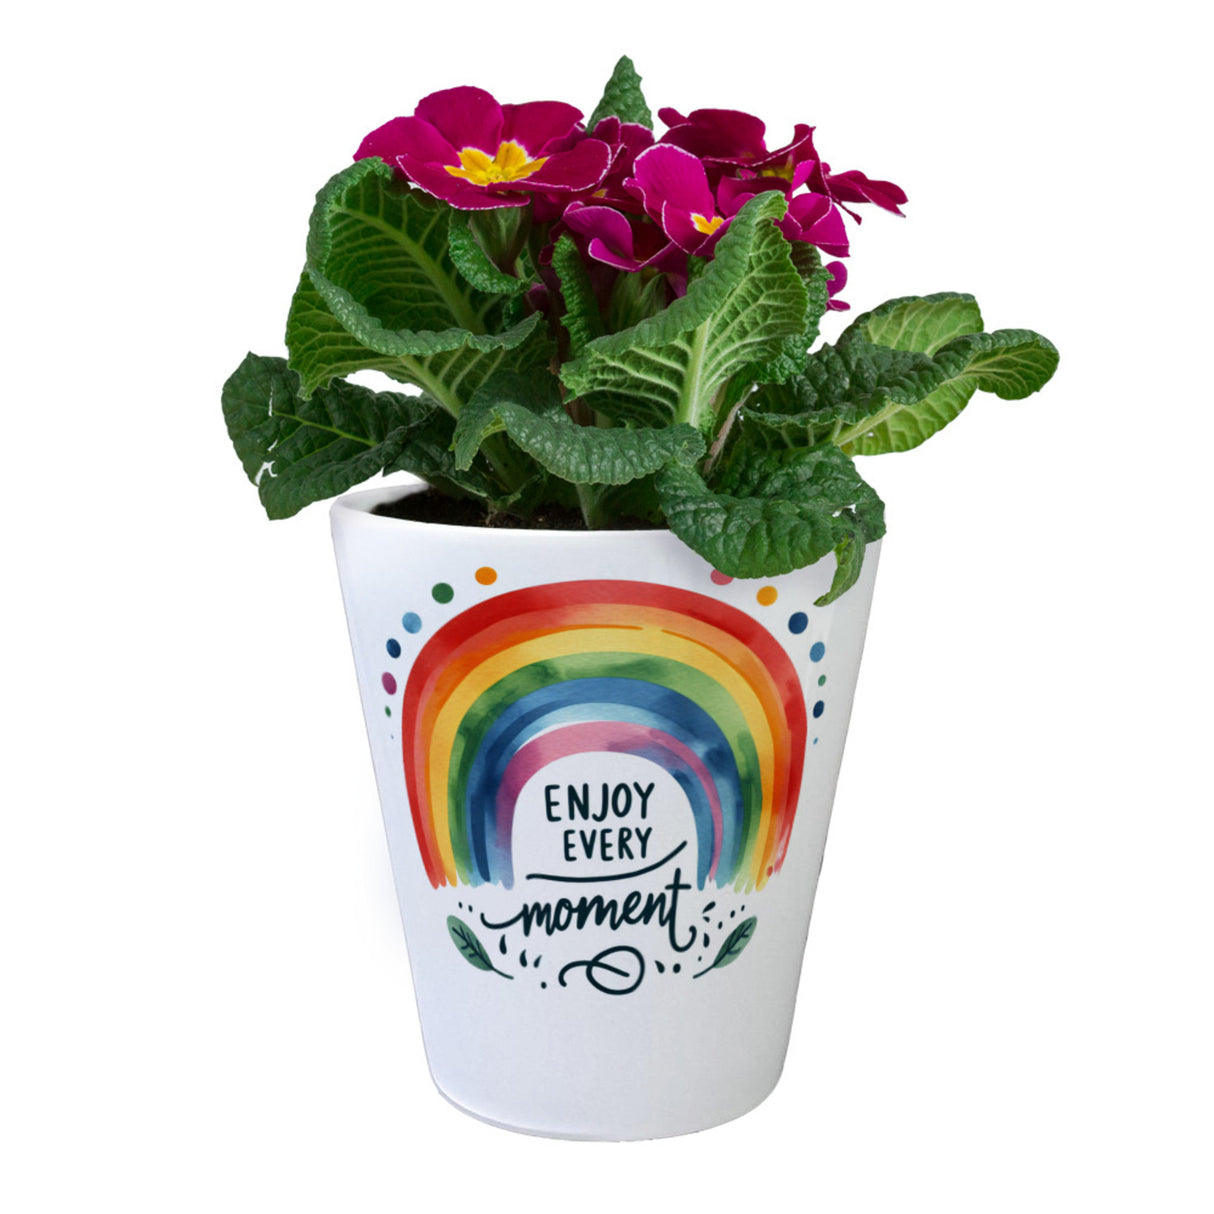 Regenbogen Blumentopf mit Spruch Enjoy every moment